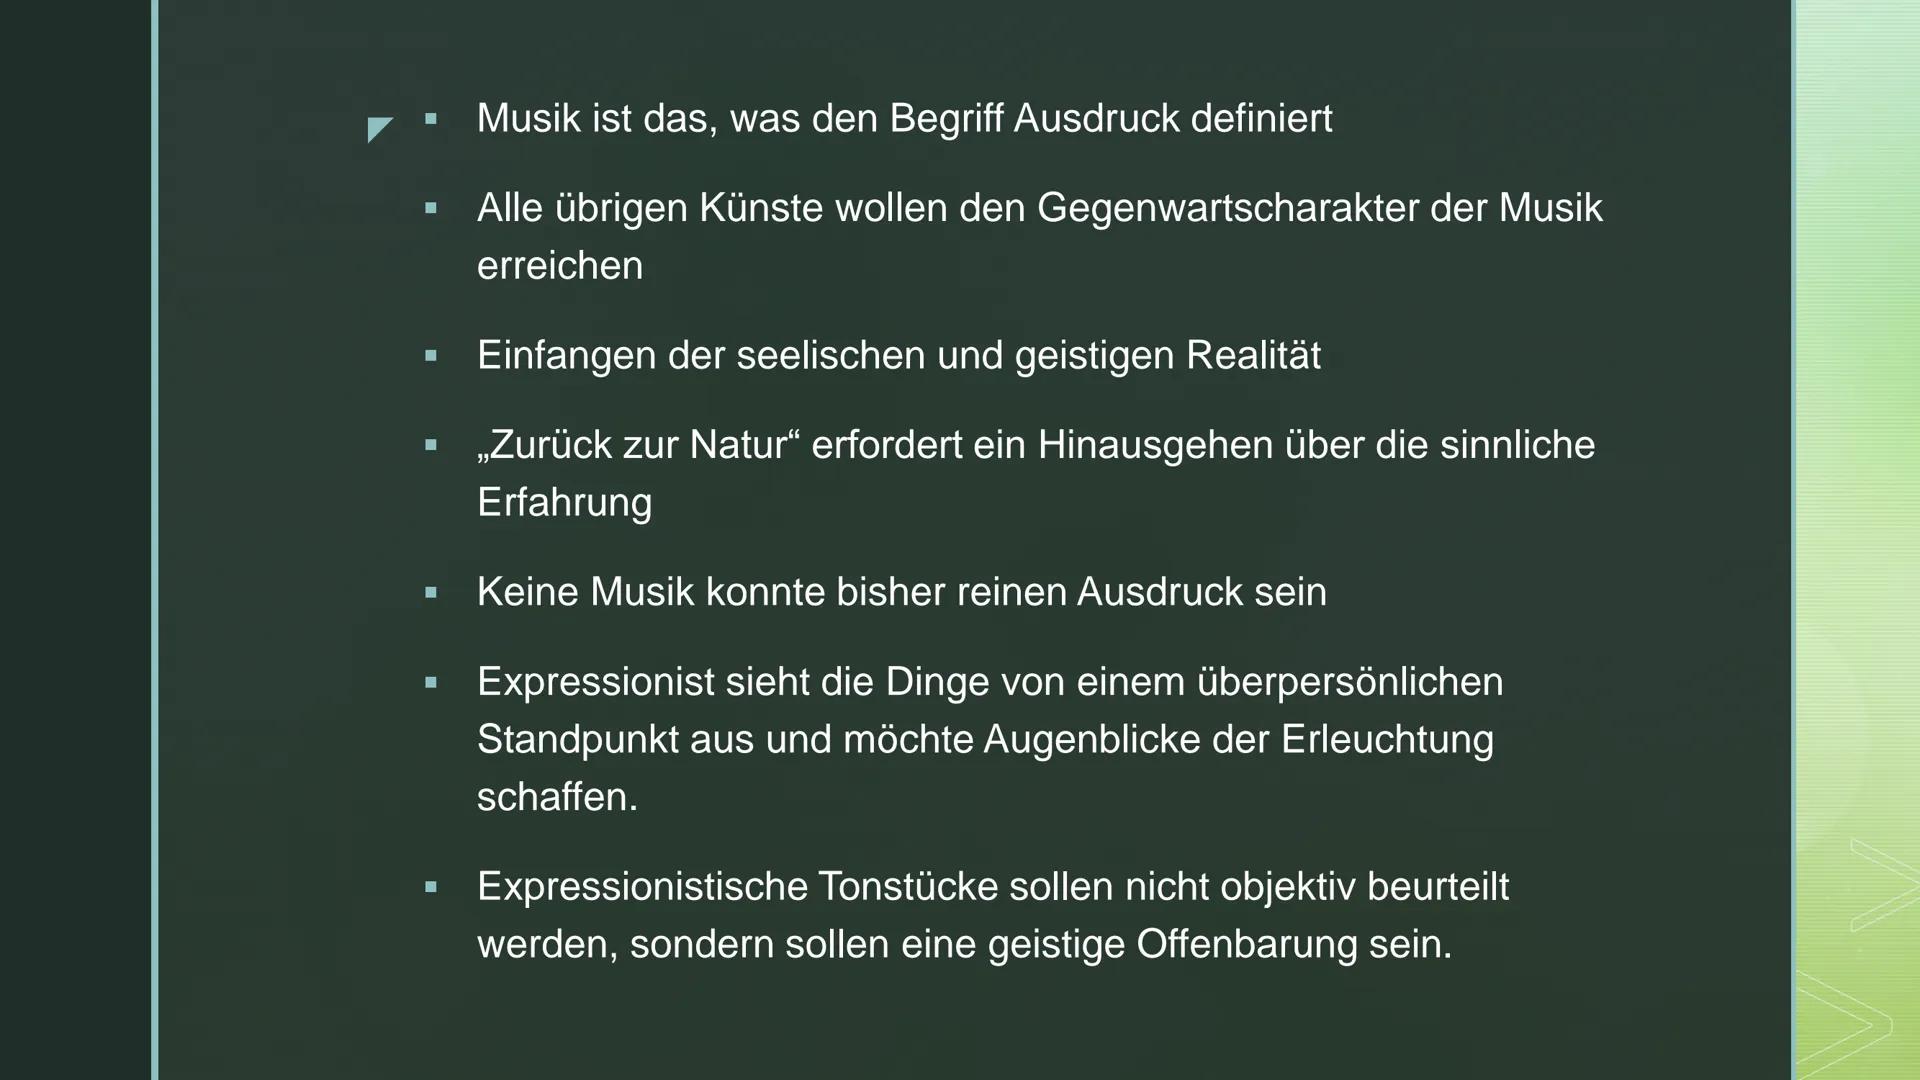 Deutsch GFS: Die expressionistische Bewegung in der Musik
1. Musikbeispiele
2. Die Strömung des Expressionismus in der Musik
3. Die Einstell